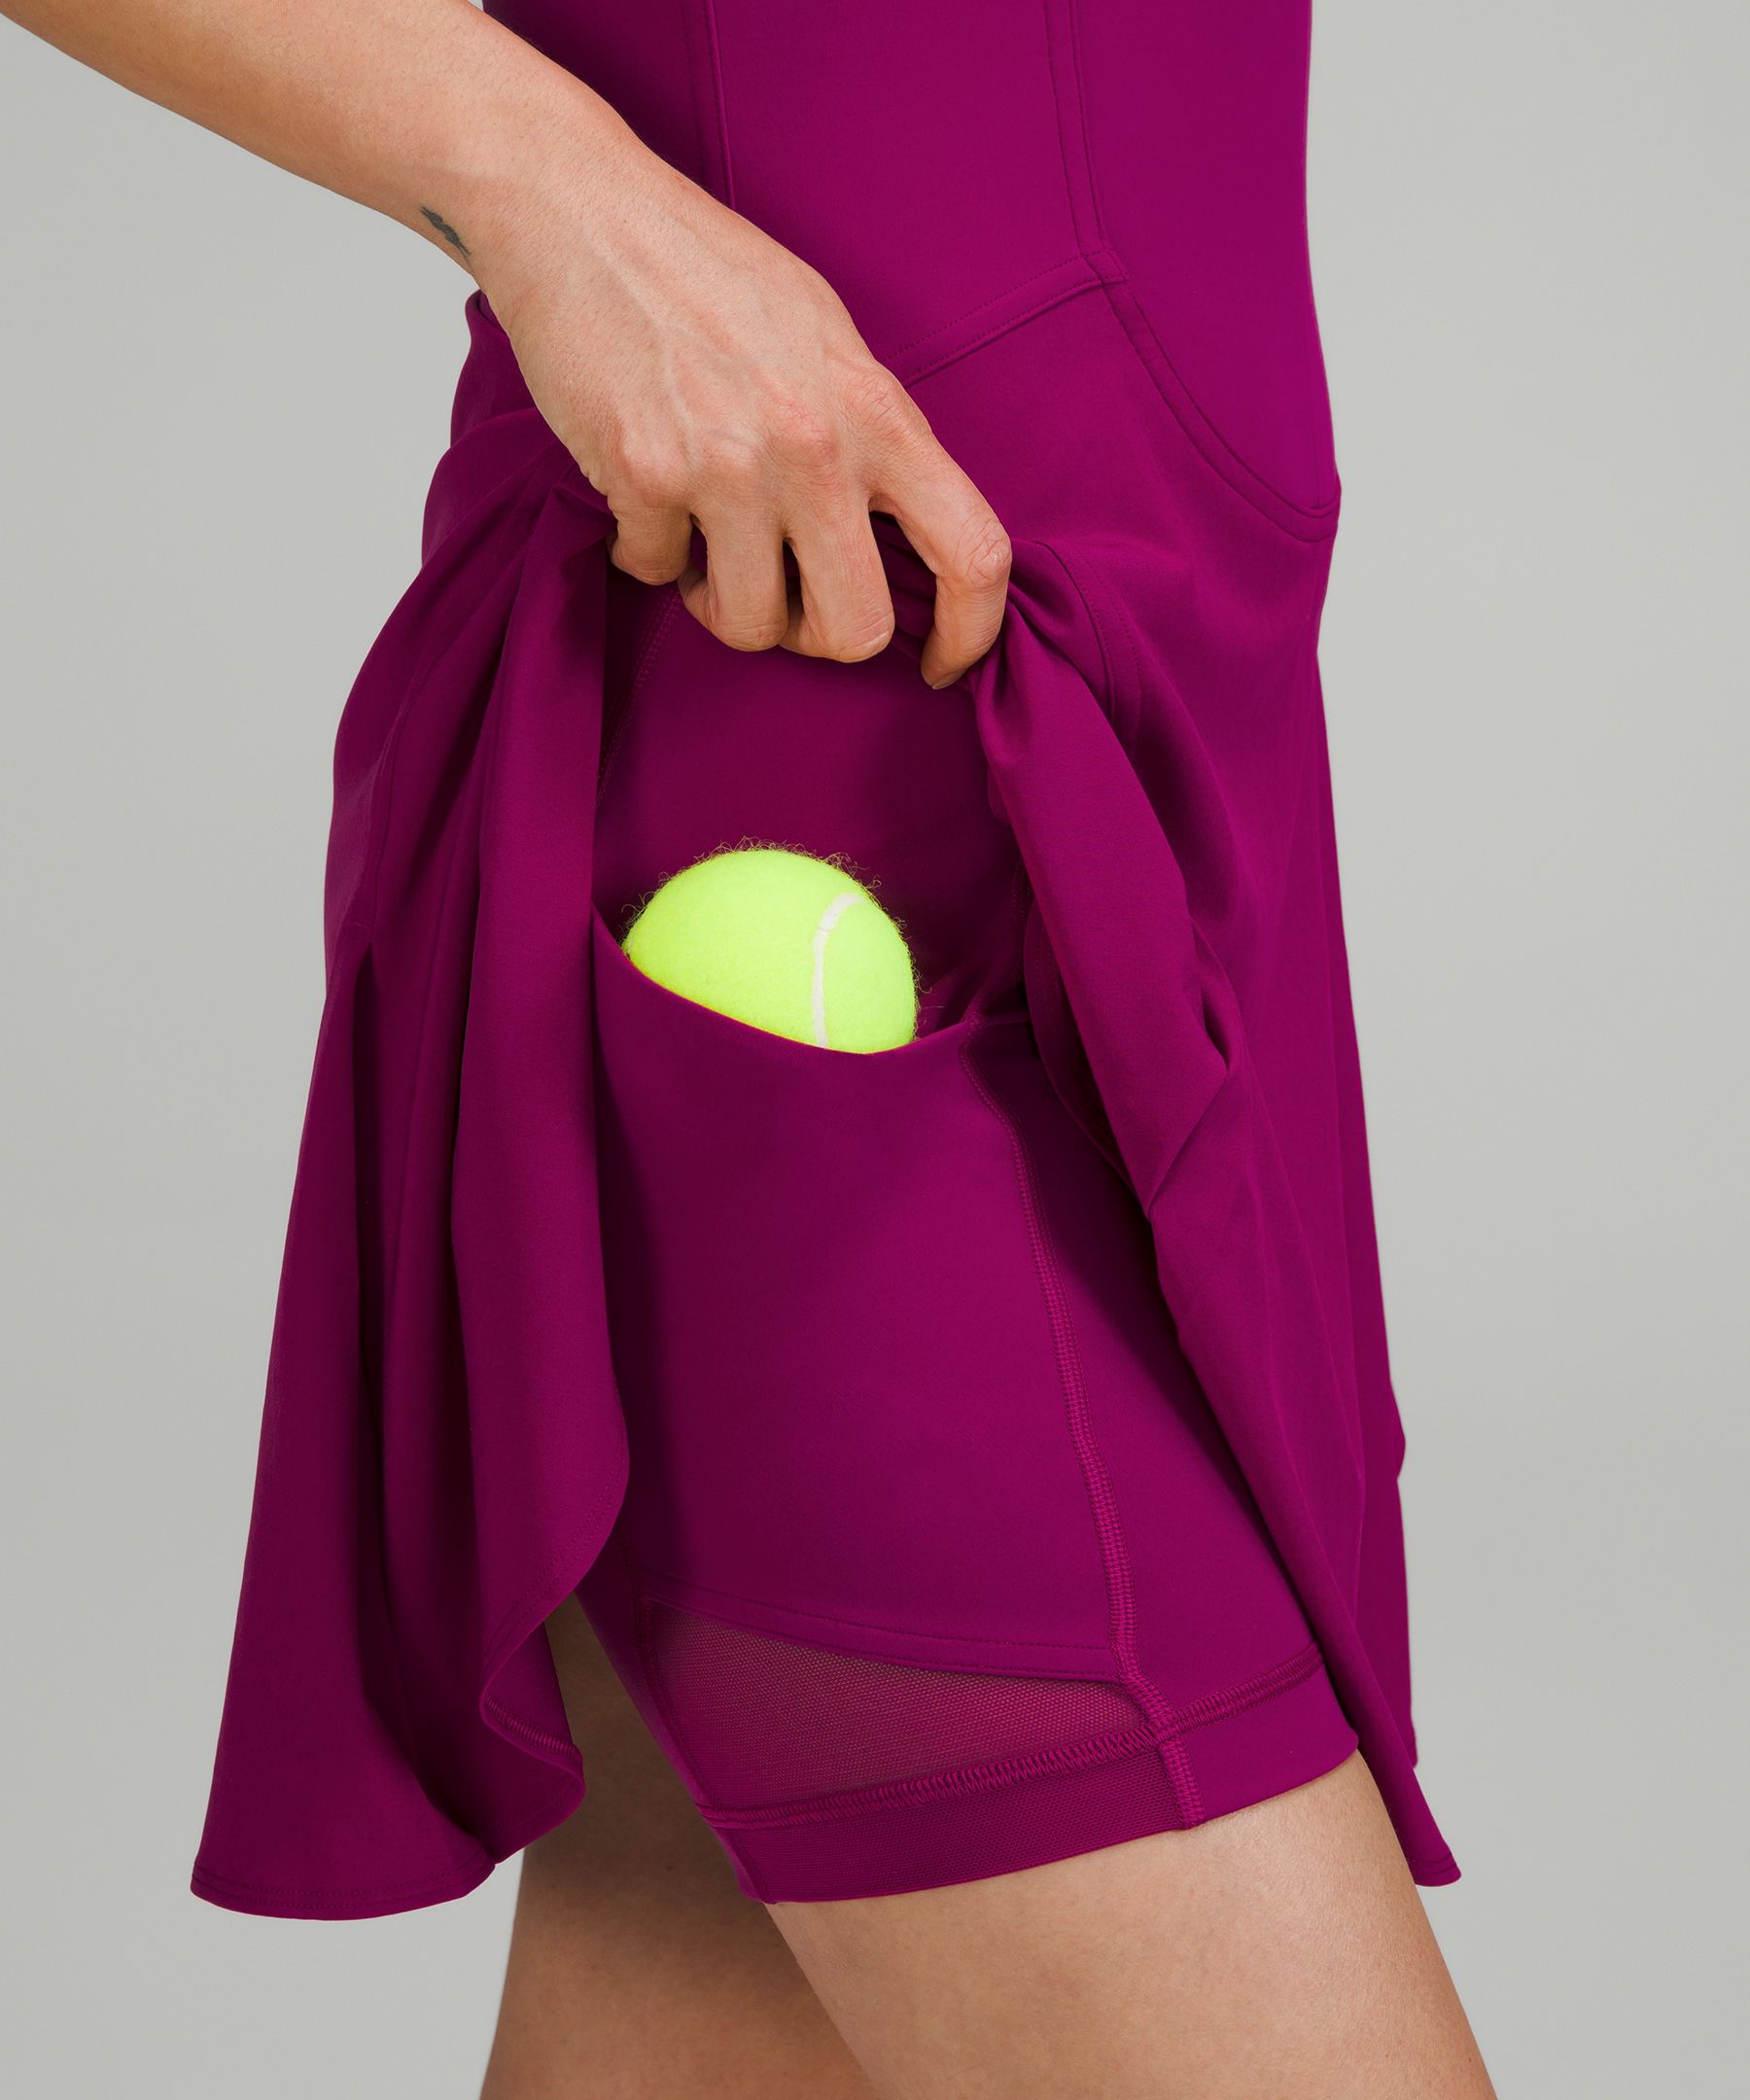  LULULEMON EVERLUX Short-Lined Tennis Tank Dress 6